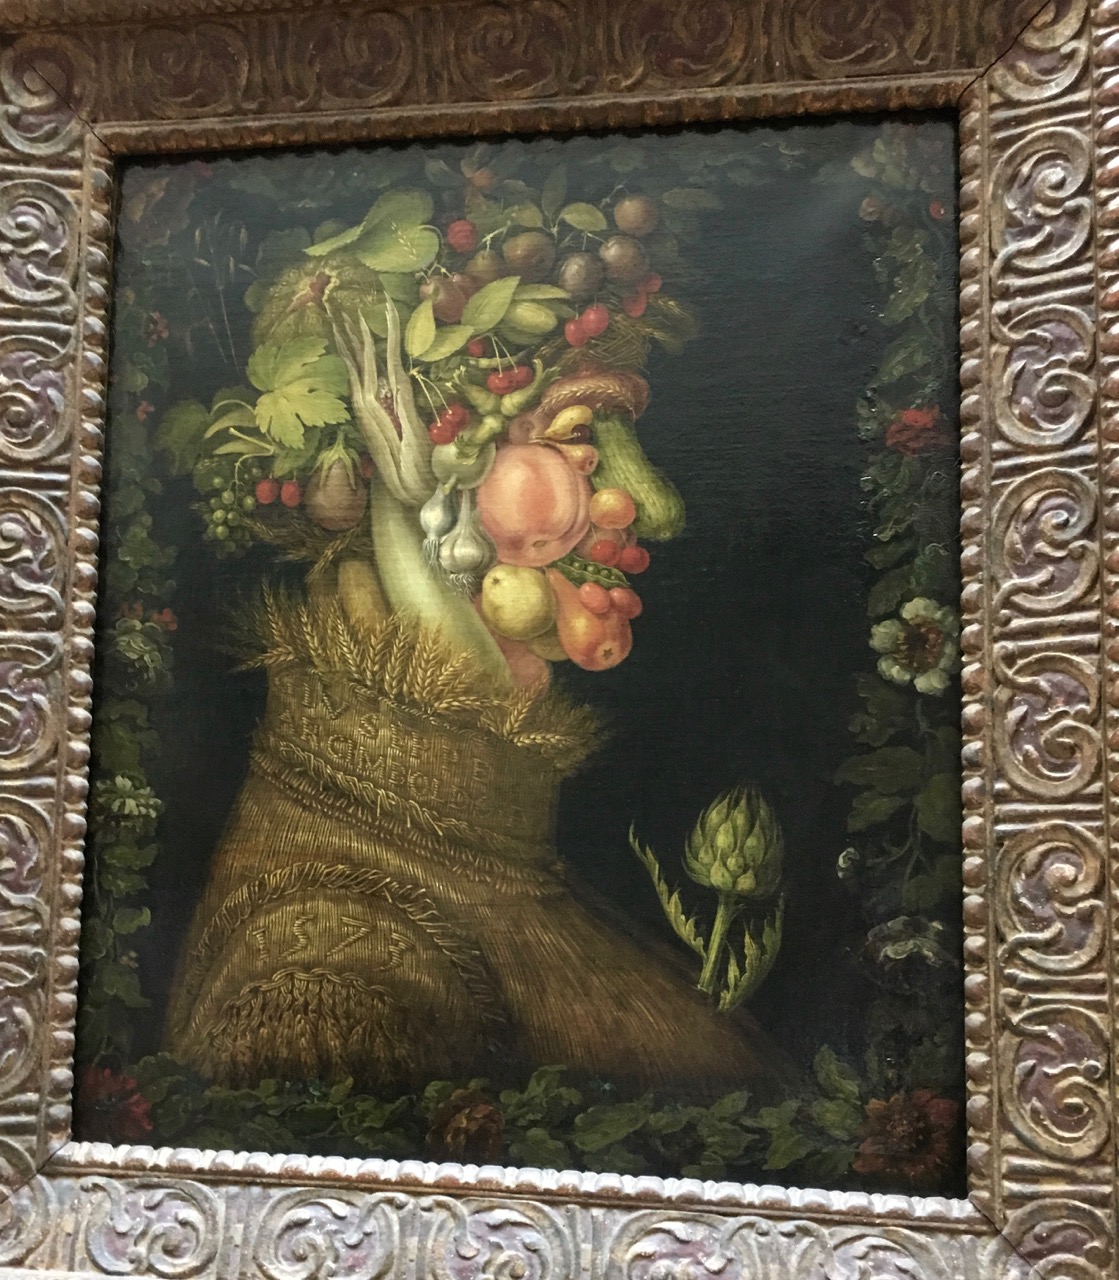 Джузеппе арчимбольдо выставка спб. Арчимбольдо Джузеппе картины. Джузеппе арчимбольдо сидящий образ лета 1573. Джузеппе арчимбольдо лето картины из собраний Лувра.